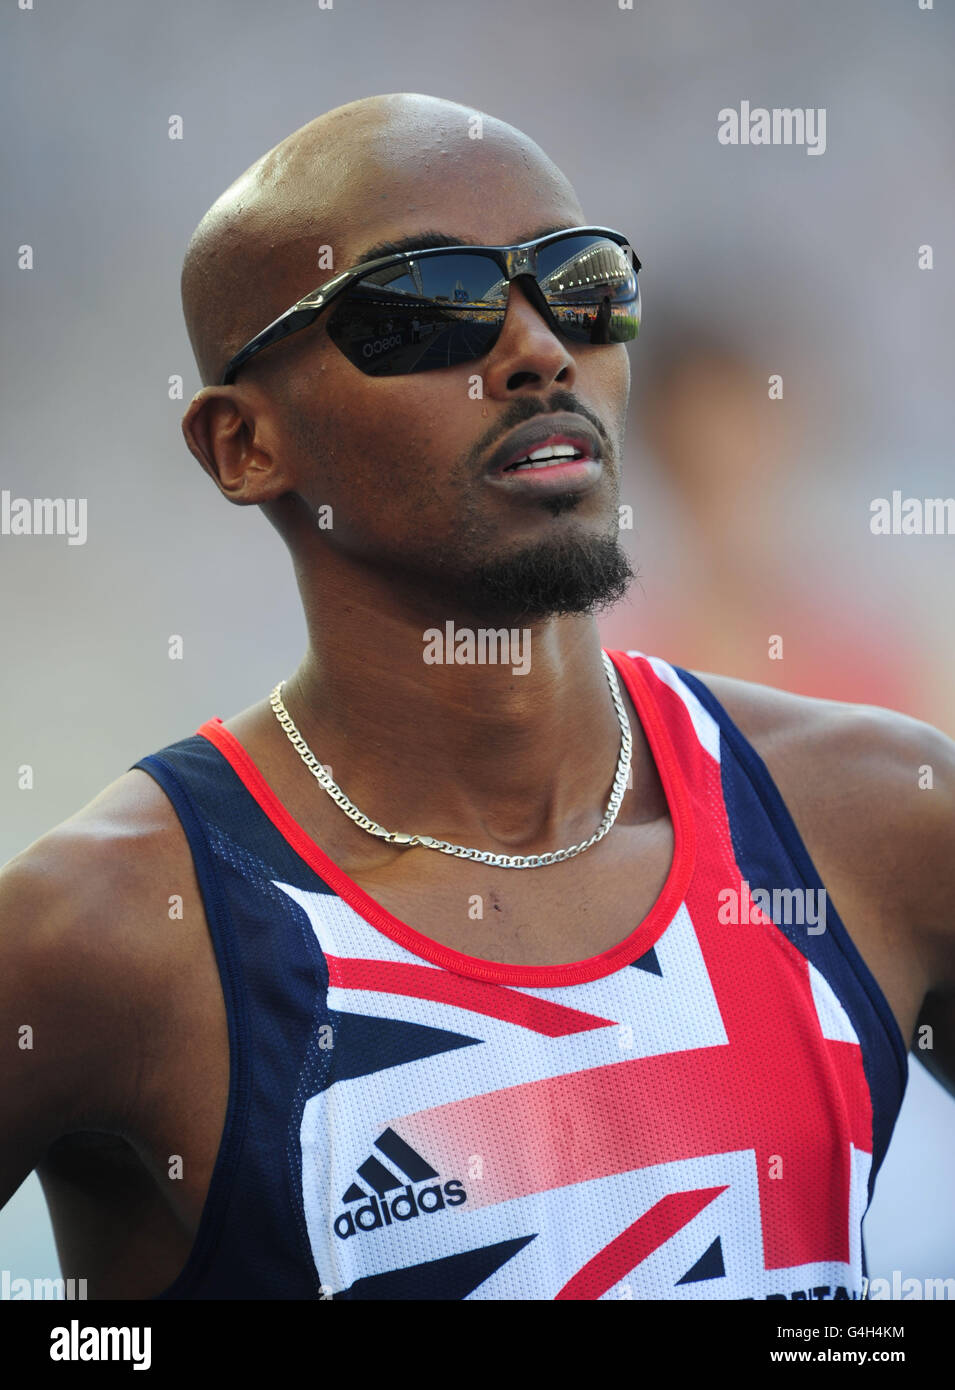 Athlétisme - Championnats du monde IAAF 2011 - 6e jour - Daegu.Mo Farah, en Grande-Bretagne, attend de commencer les 5000m Heats des hommes Banque D'Images